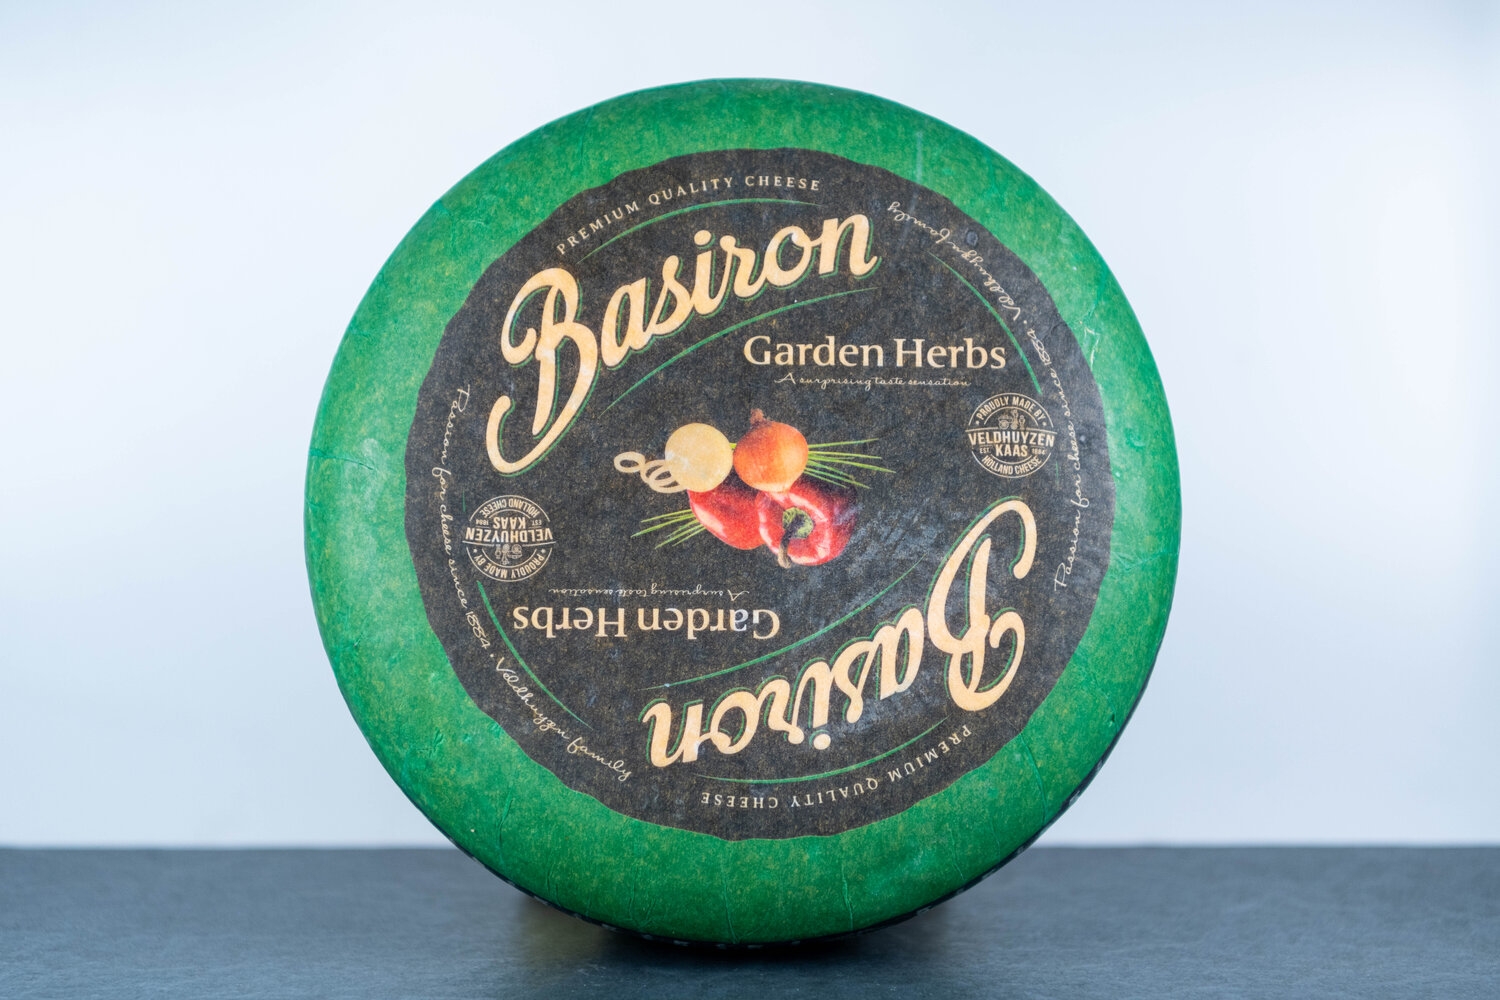 Basiron Garden Herbs Cheese